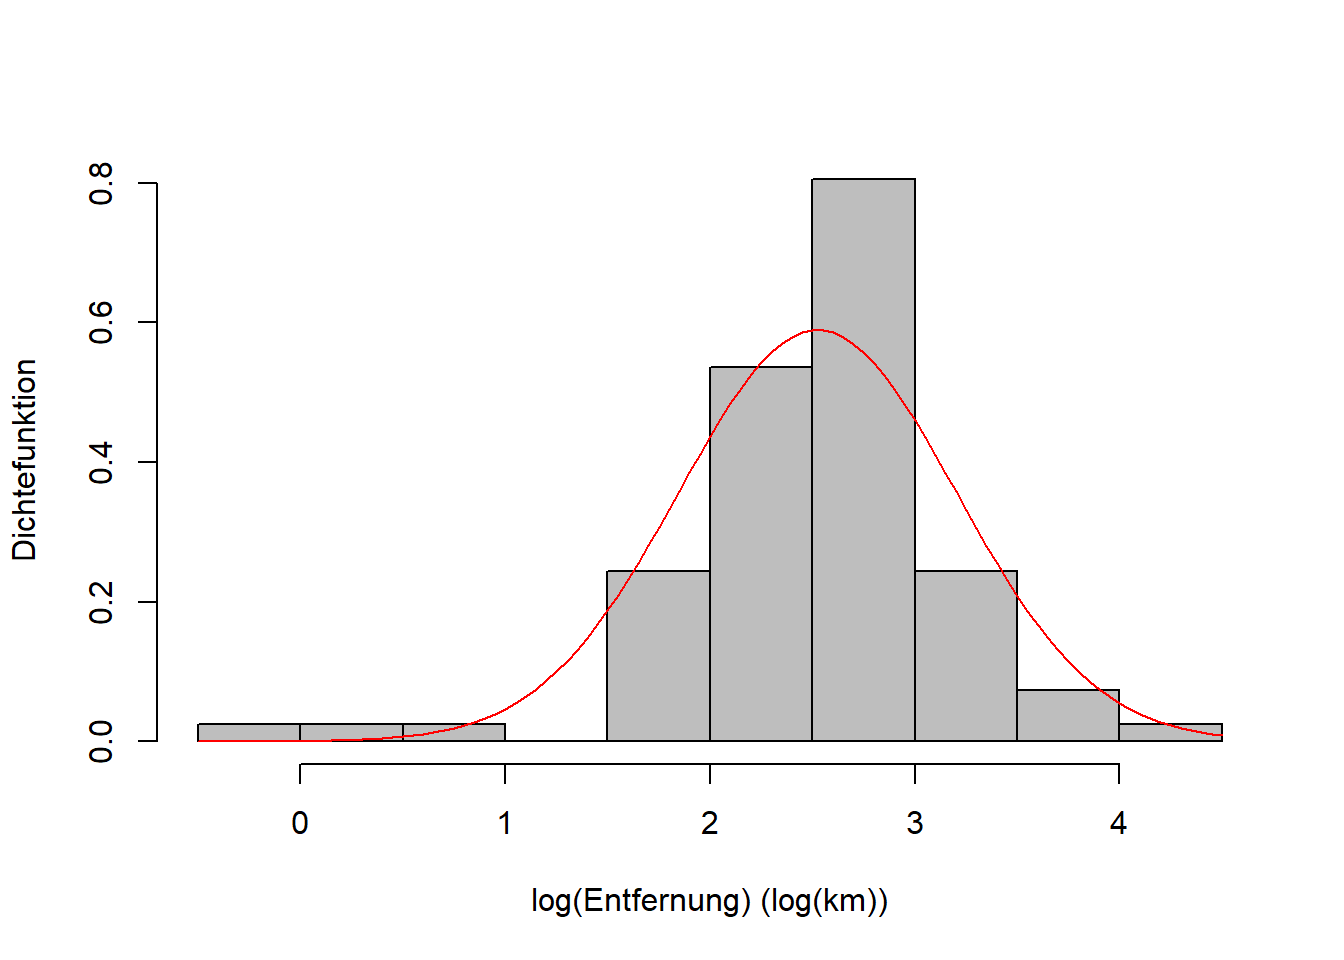 Links: Empirische Verteilung der Entfernungsdaten mit theoretischer Lognormalverteilung. Rechts: Empirische Verteilung der log-transformierten Entfernungsdaten mit theoretischer Normalverteilung.